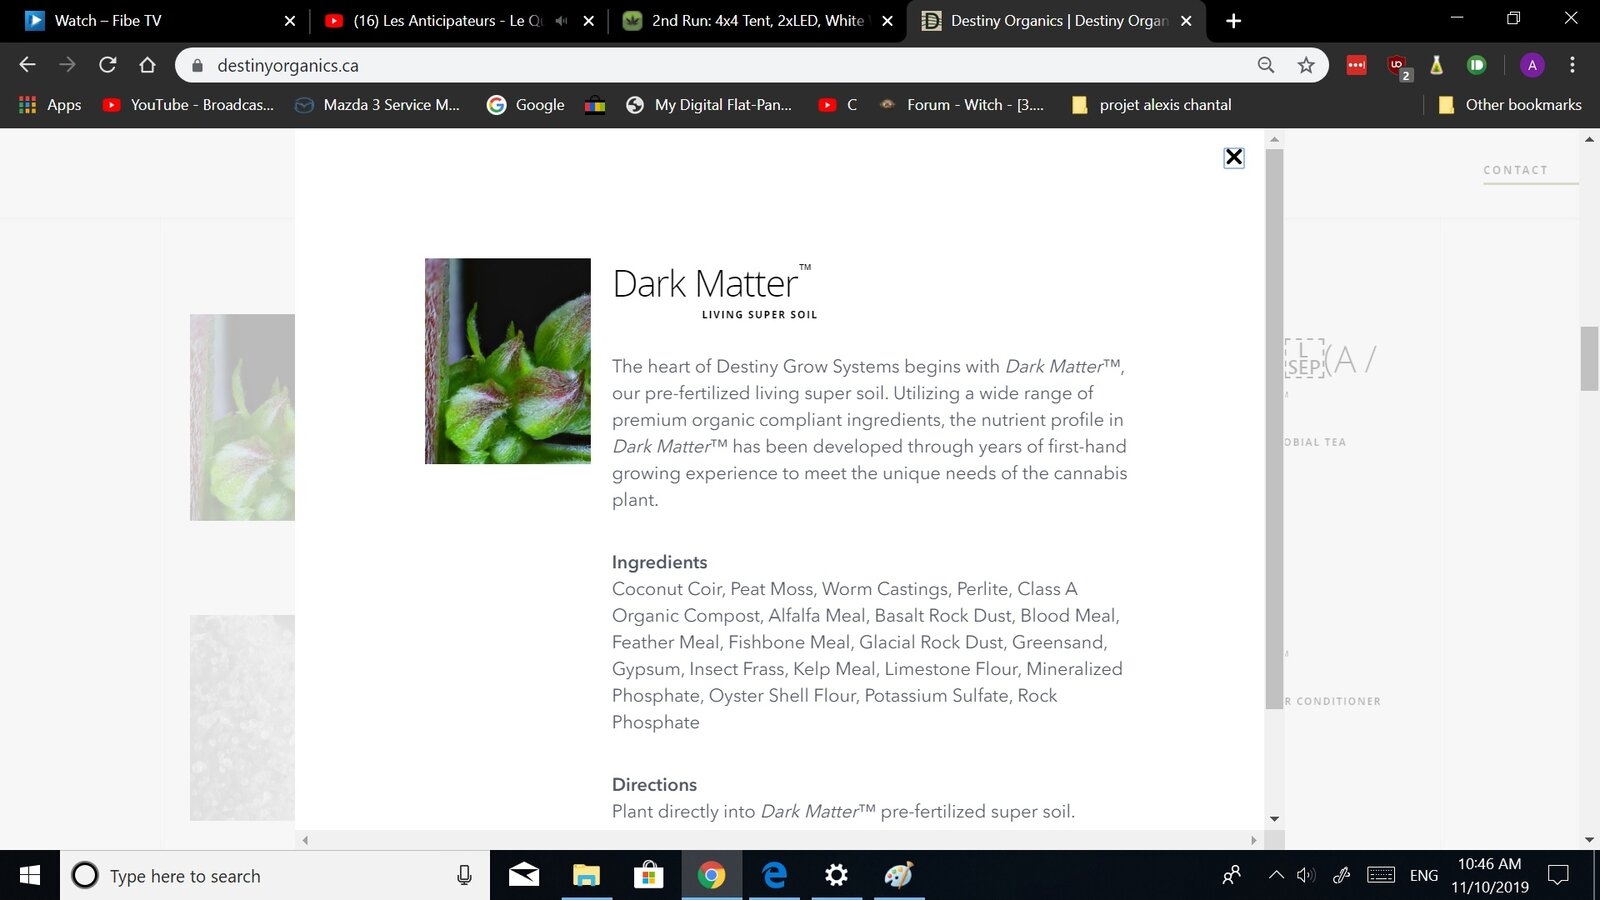 darkmatter.jpg